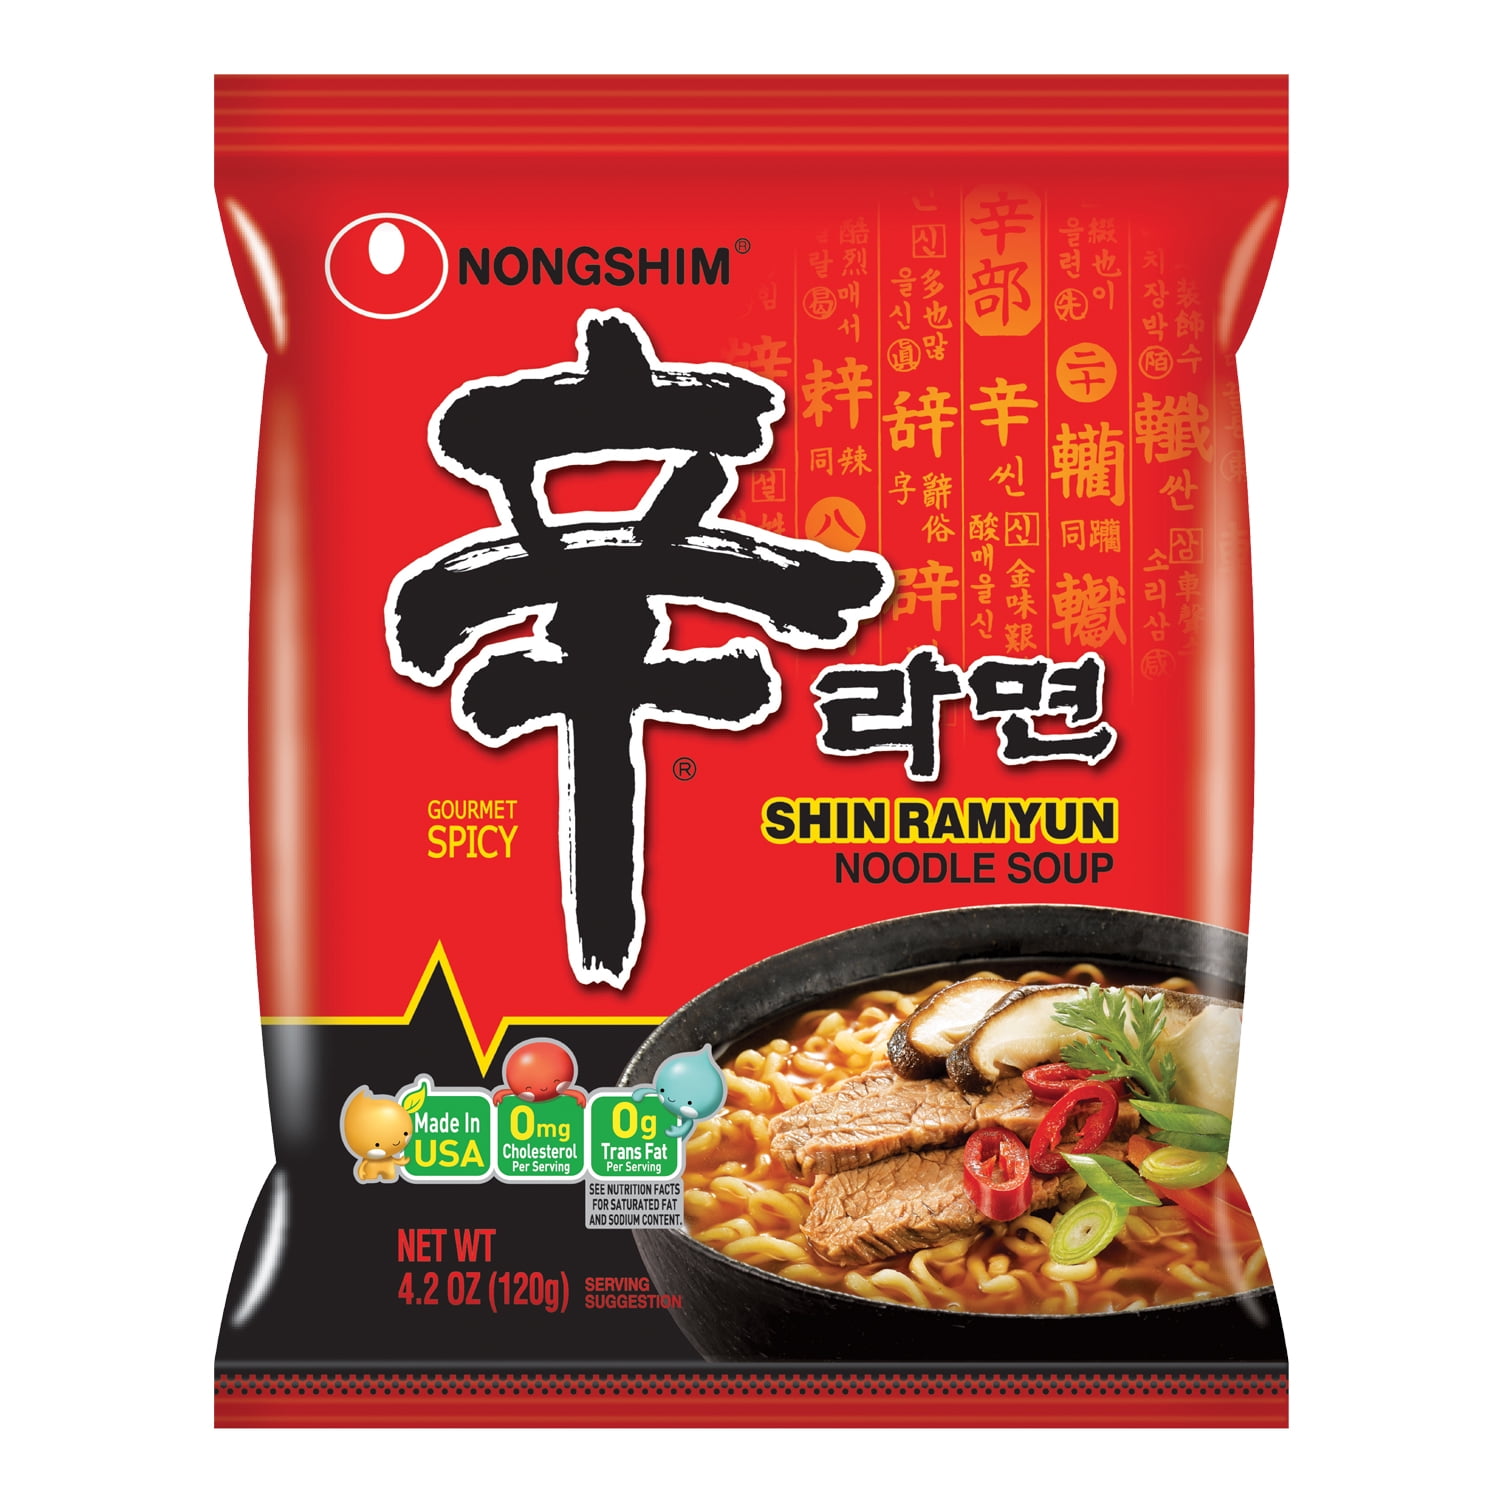 tilfældig hold distrikt Nongshim Shin Ramyun Spicy Beef Ramen Noodle Soup Pack, 4.02oz X 10 Count -  Walmart.com